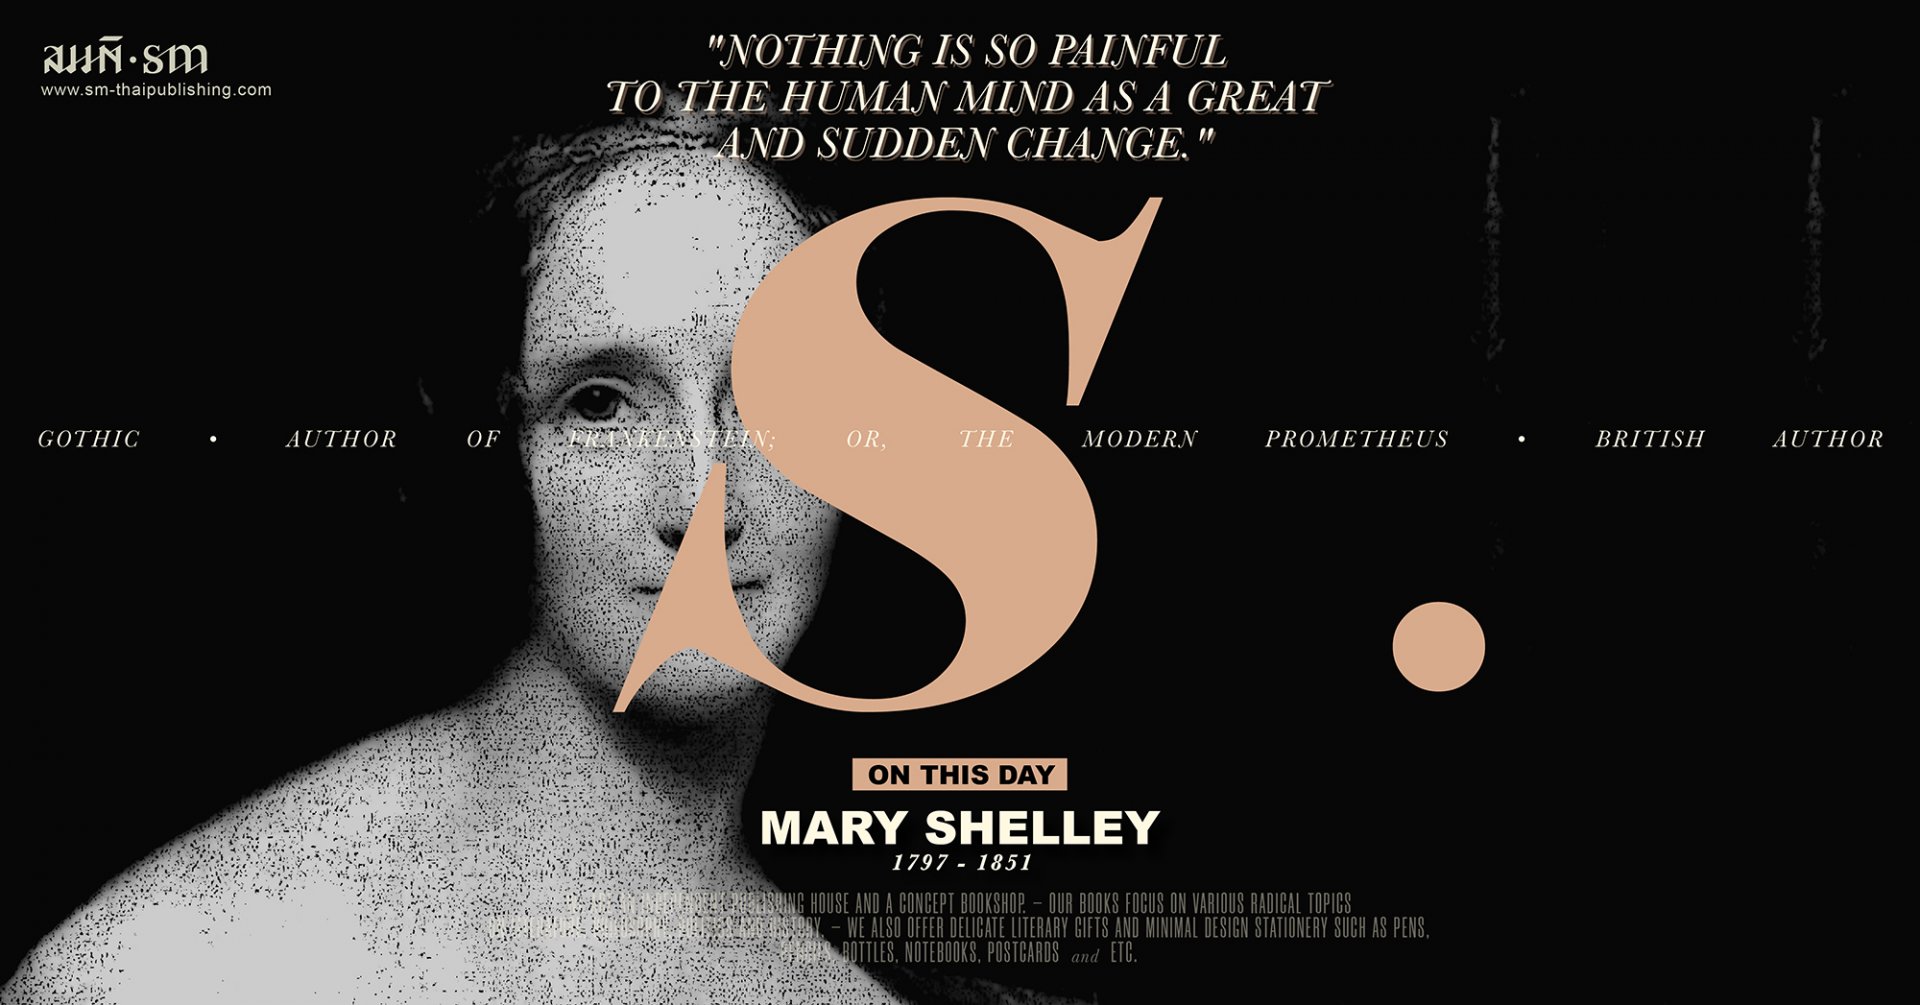 แมรี เชลลีย์ (Mary Shelley)